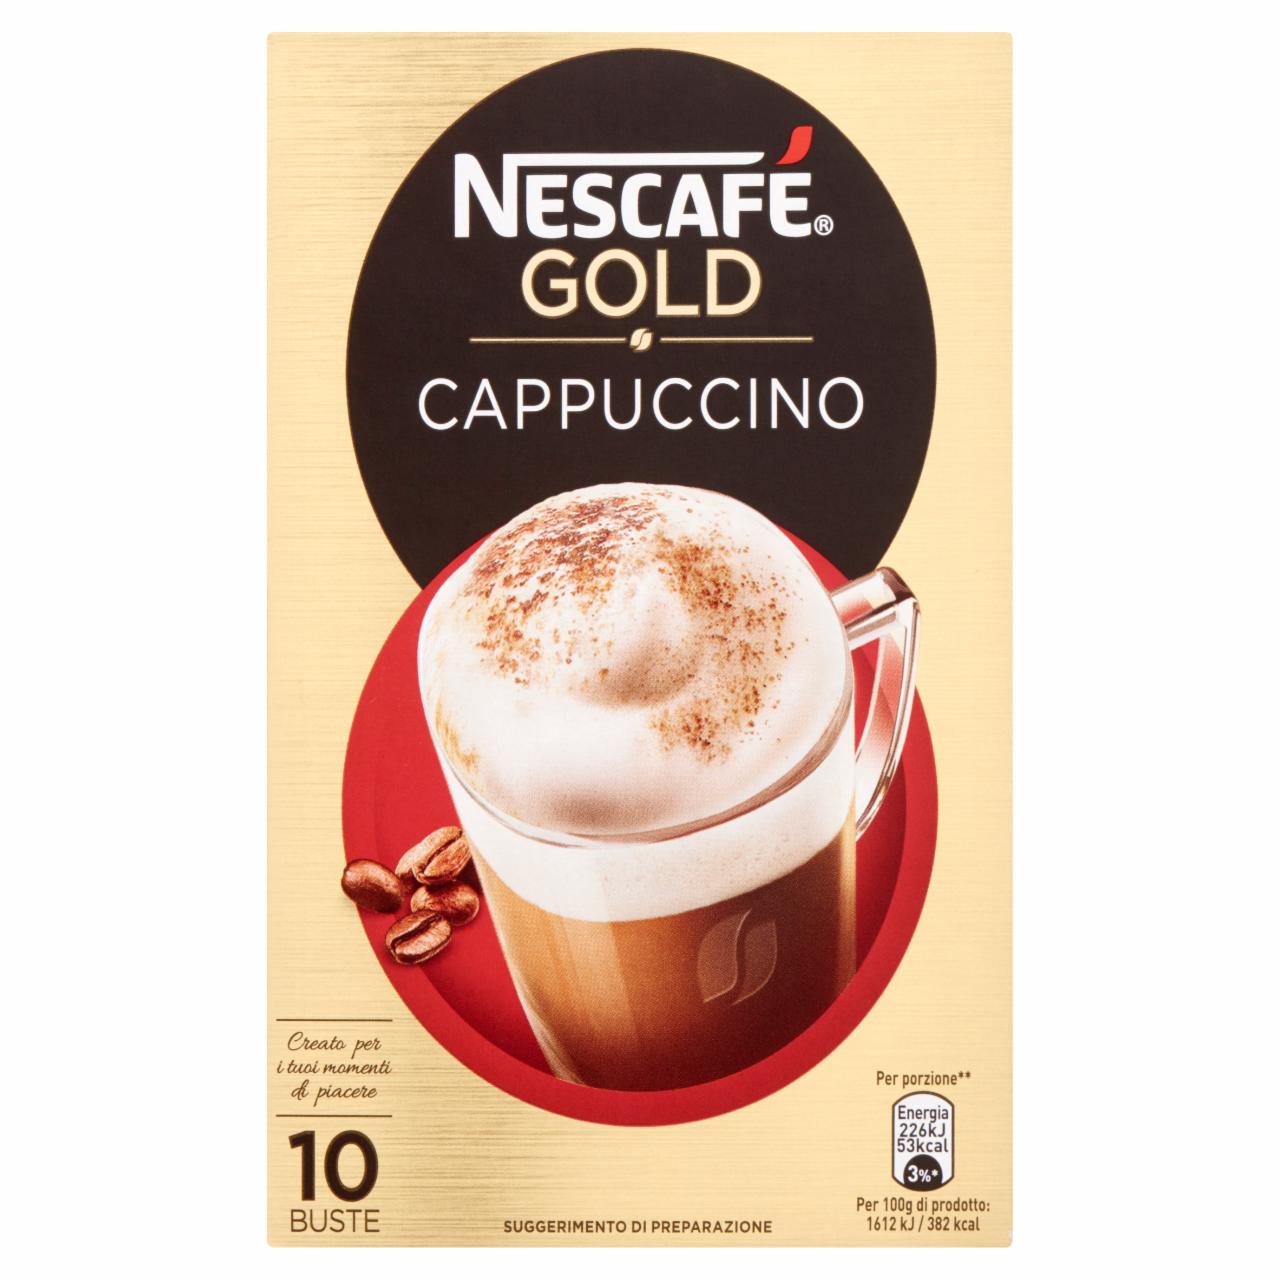 Képek - Nescafé Gold Cappuccino azonnal oldódó kávéspecialitás 10 db 140 g